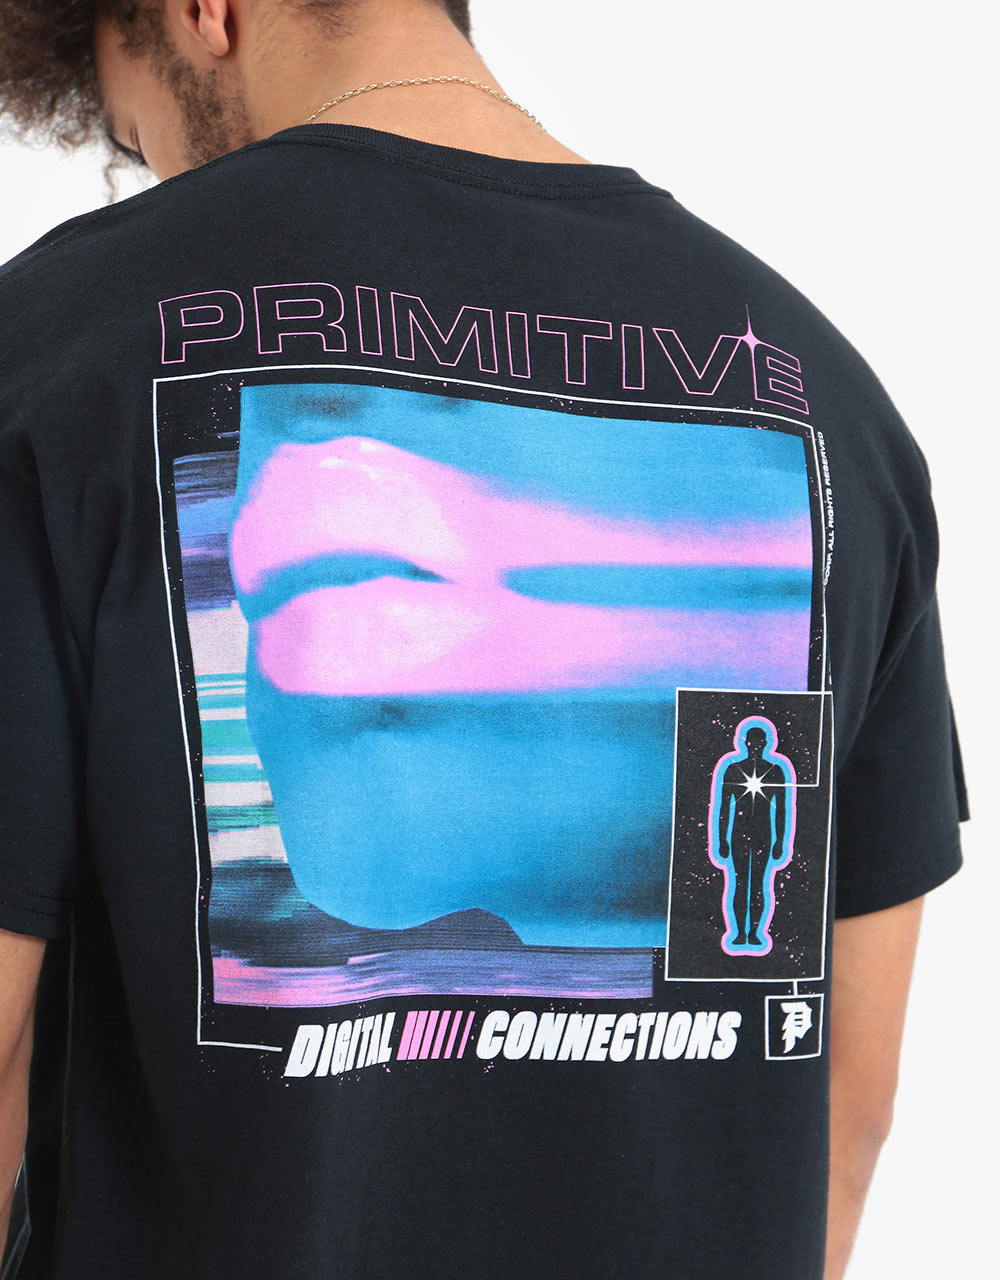 Primitive Connections T-Shirt - Black